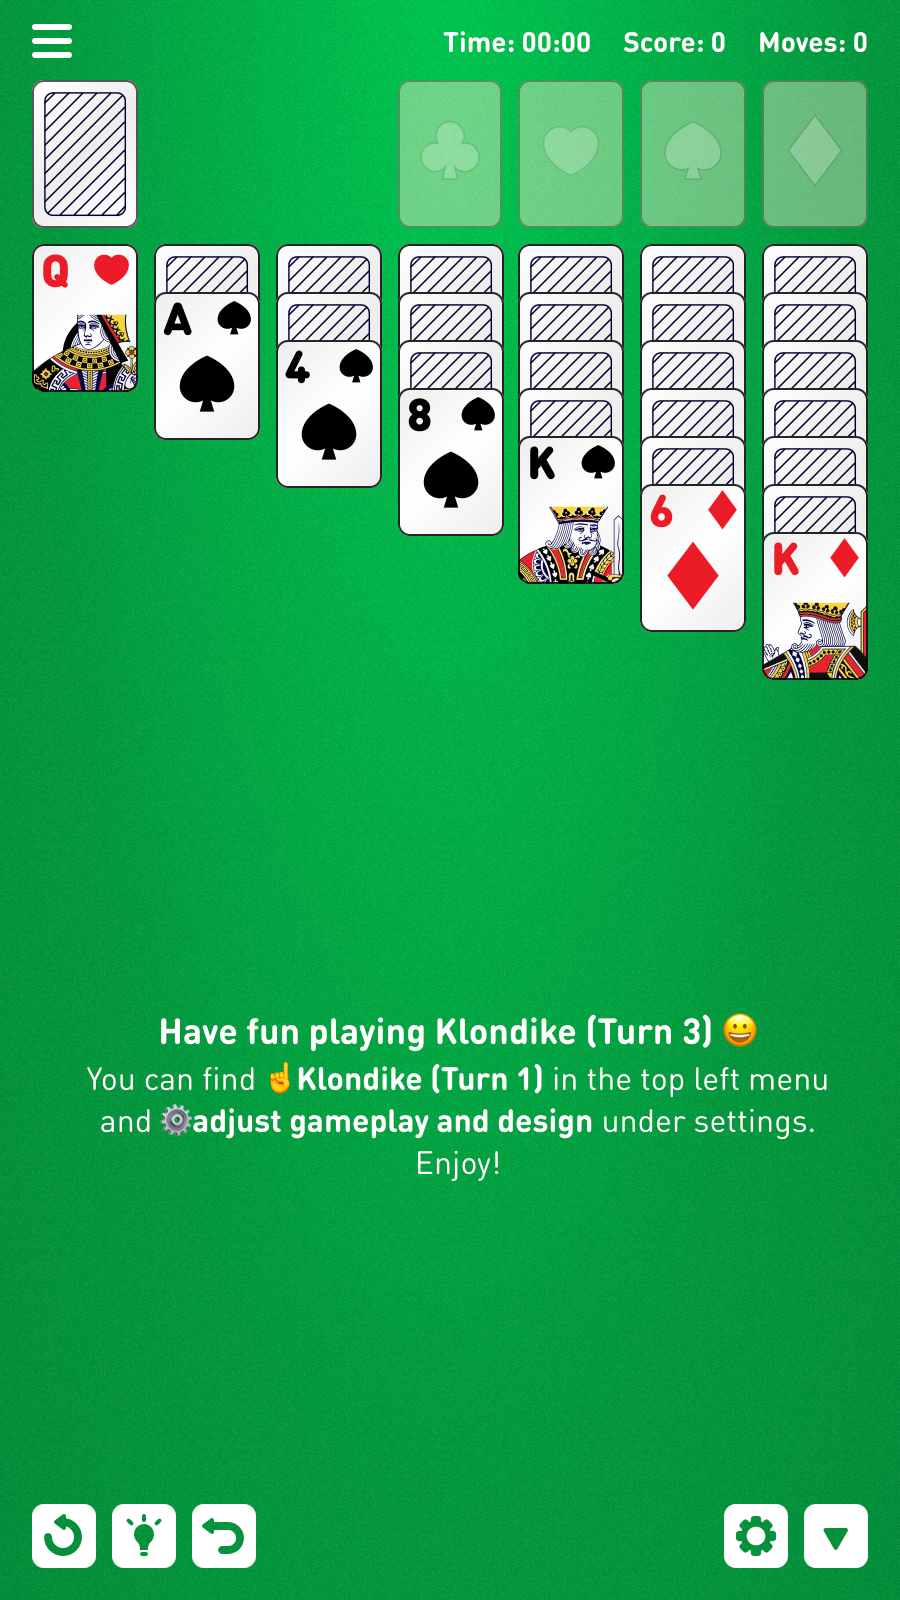 Jogo de cartas Paciência Spider versão móvel andróide iOS-TapTap